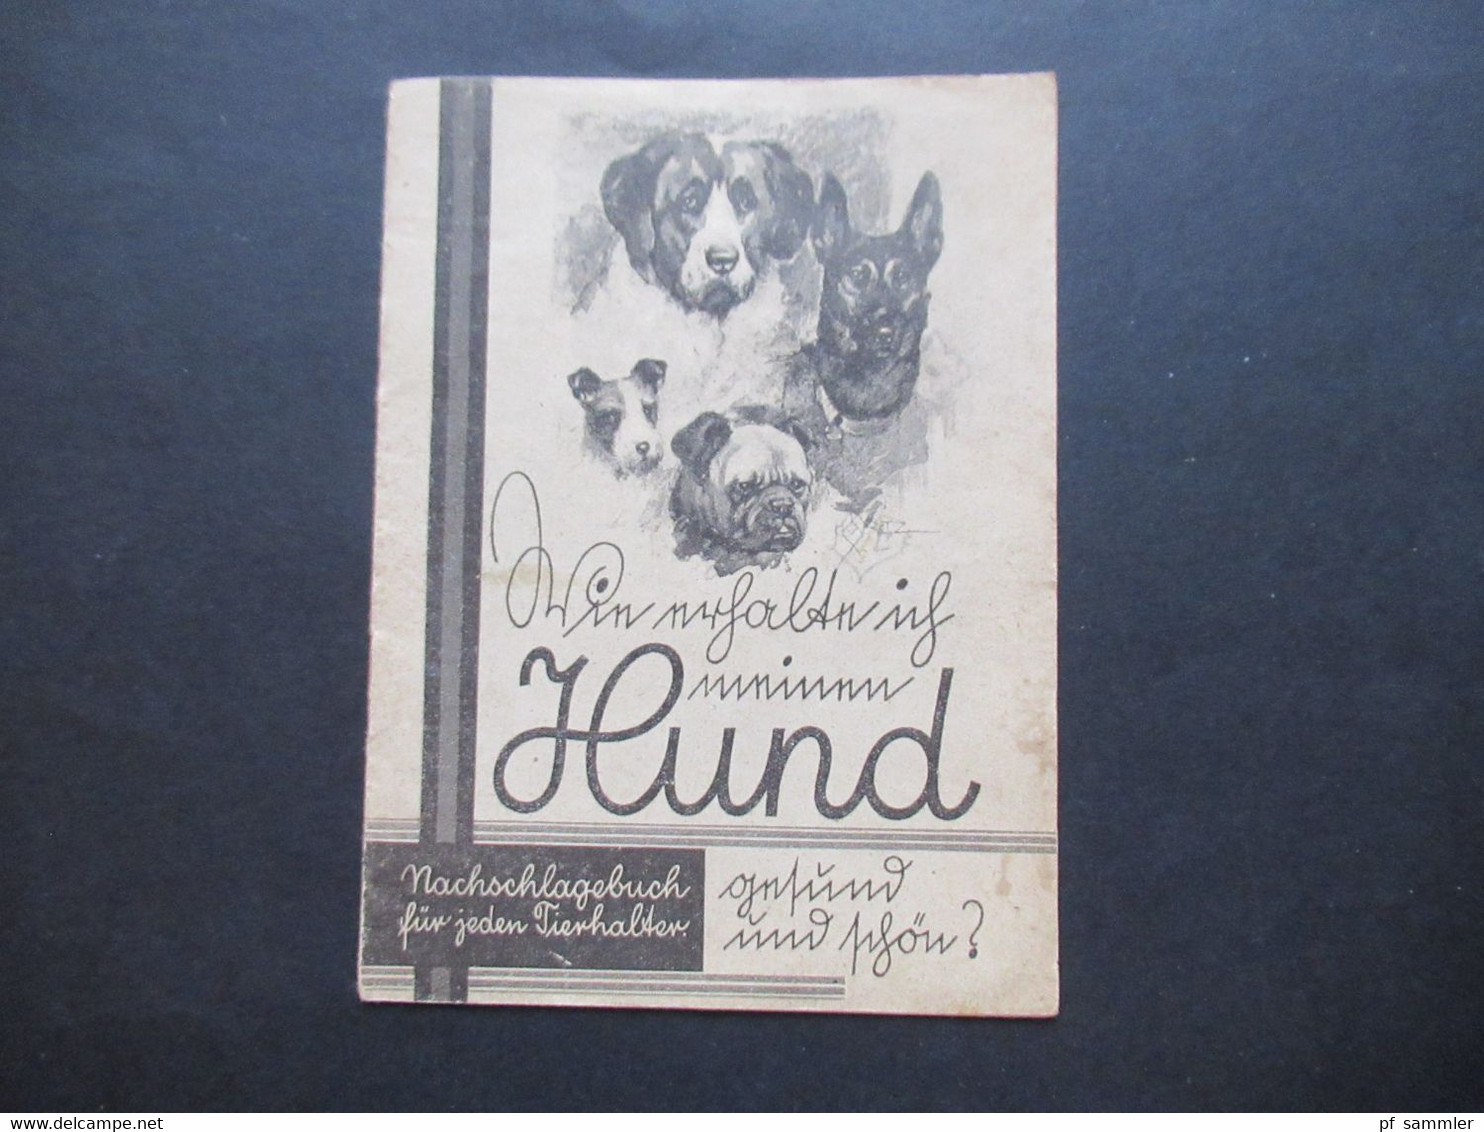 Kleines Heft / Nachschlagebuch Für Jeden Hundehalter Gesund Und Schön Ca. 1950er Jahre Creolinwerke Hamburg - Publicidad